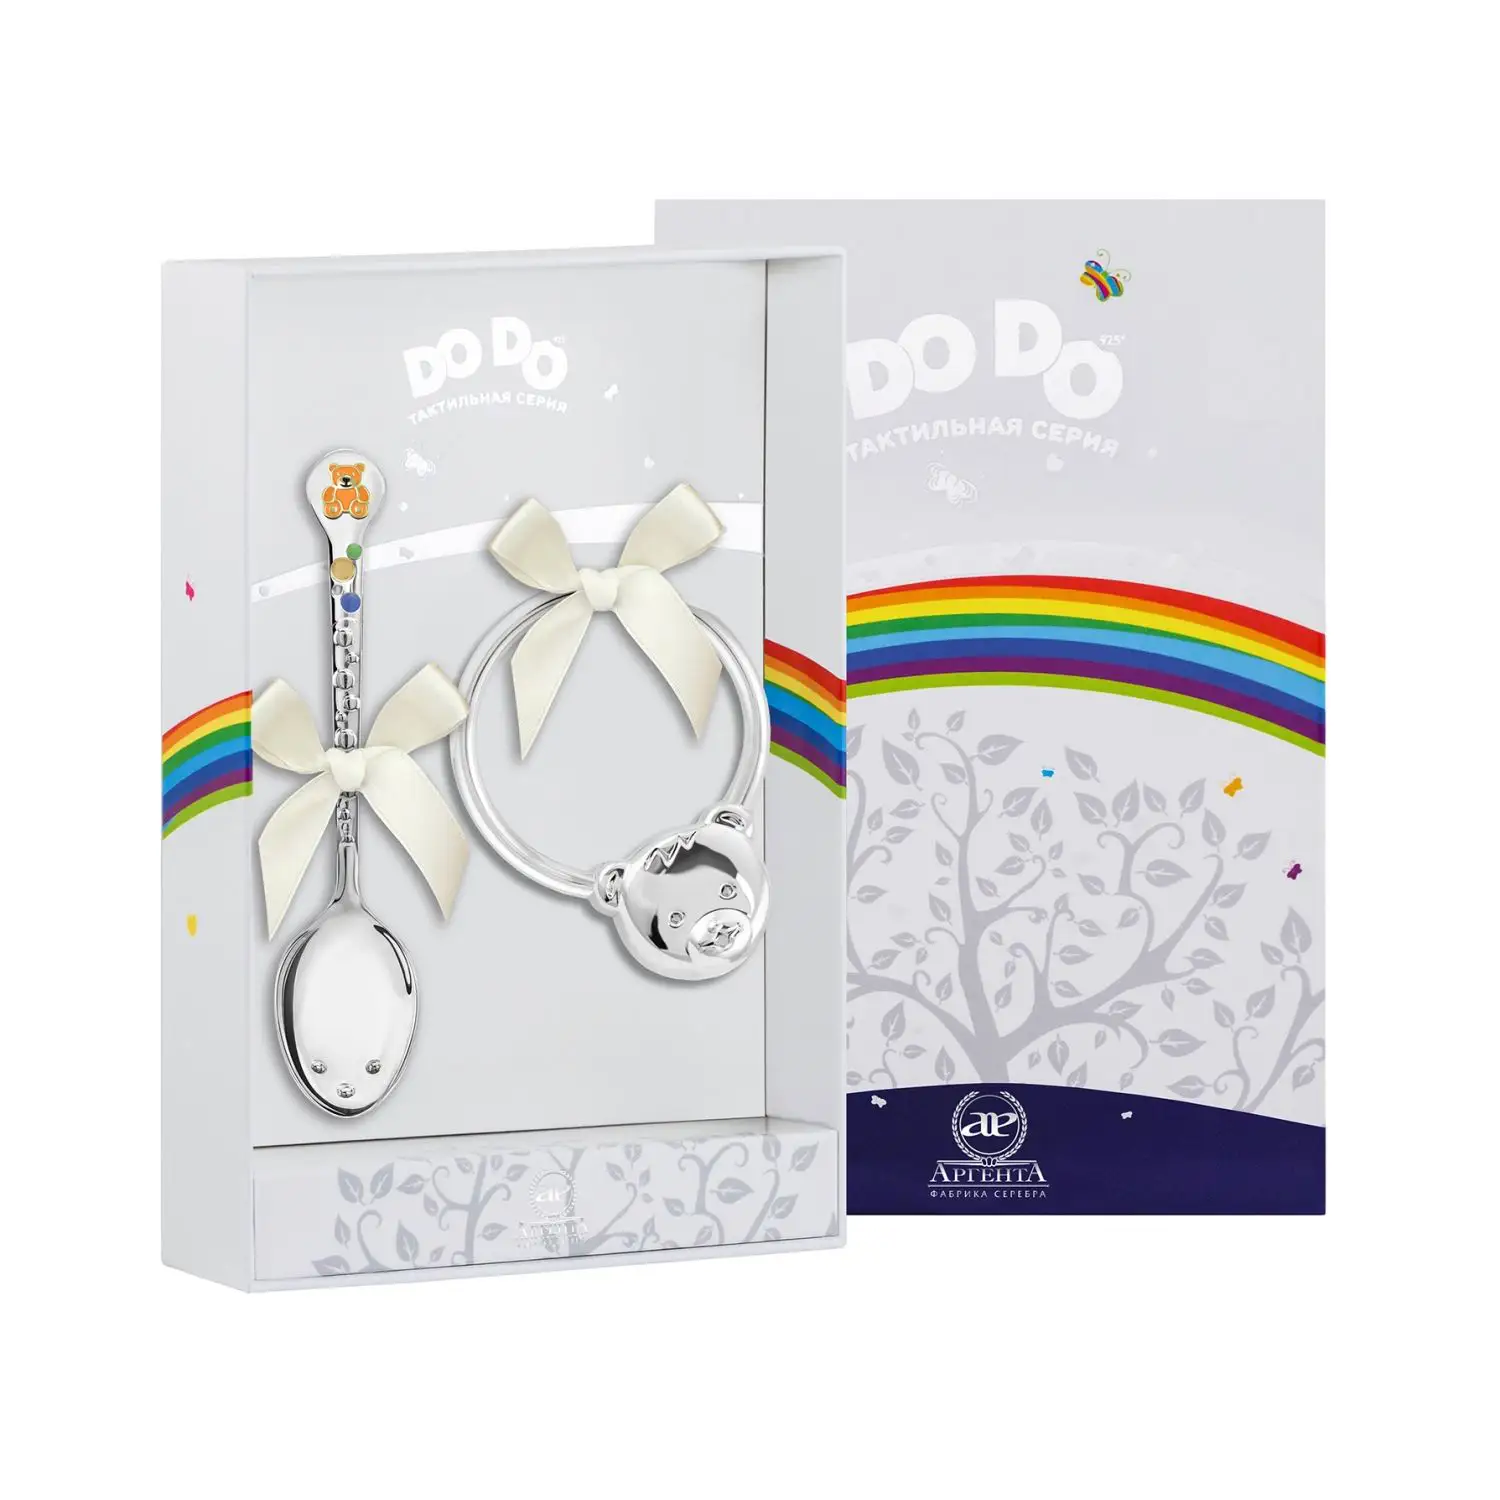 Набор для малышей DODO Медвежонок: ложка и погремушка (Серебро 925) набор для малышей dodo мишка с бантом ложка и погремушка серебро 925